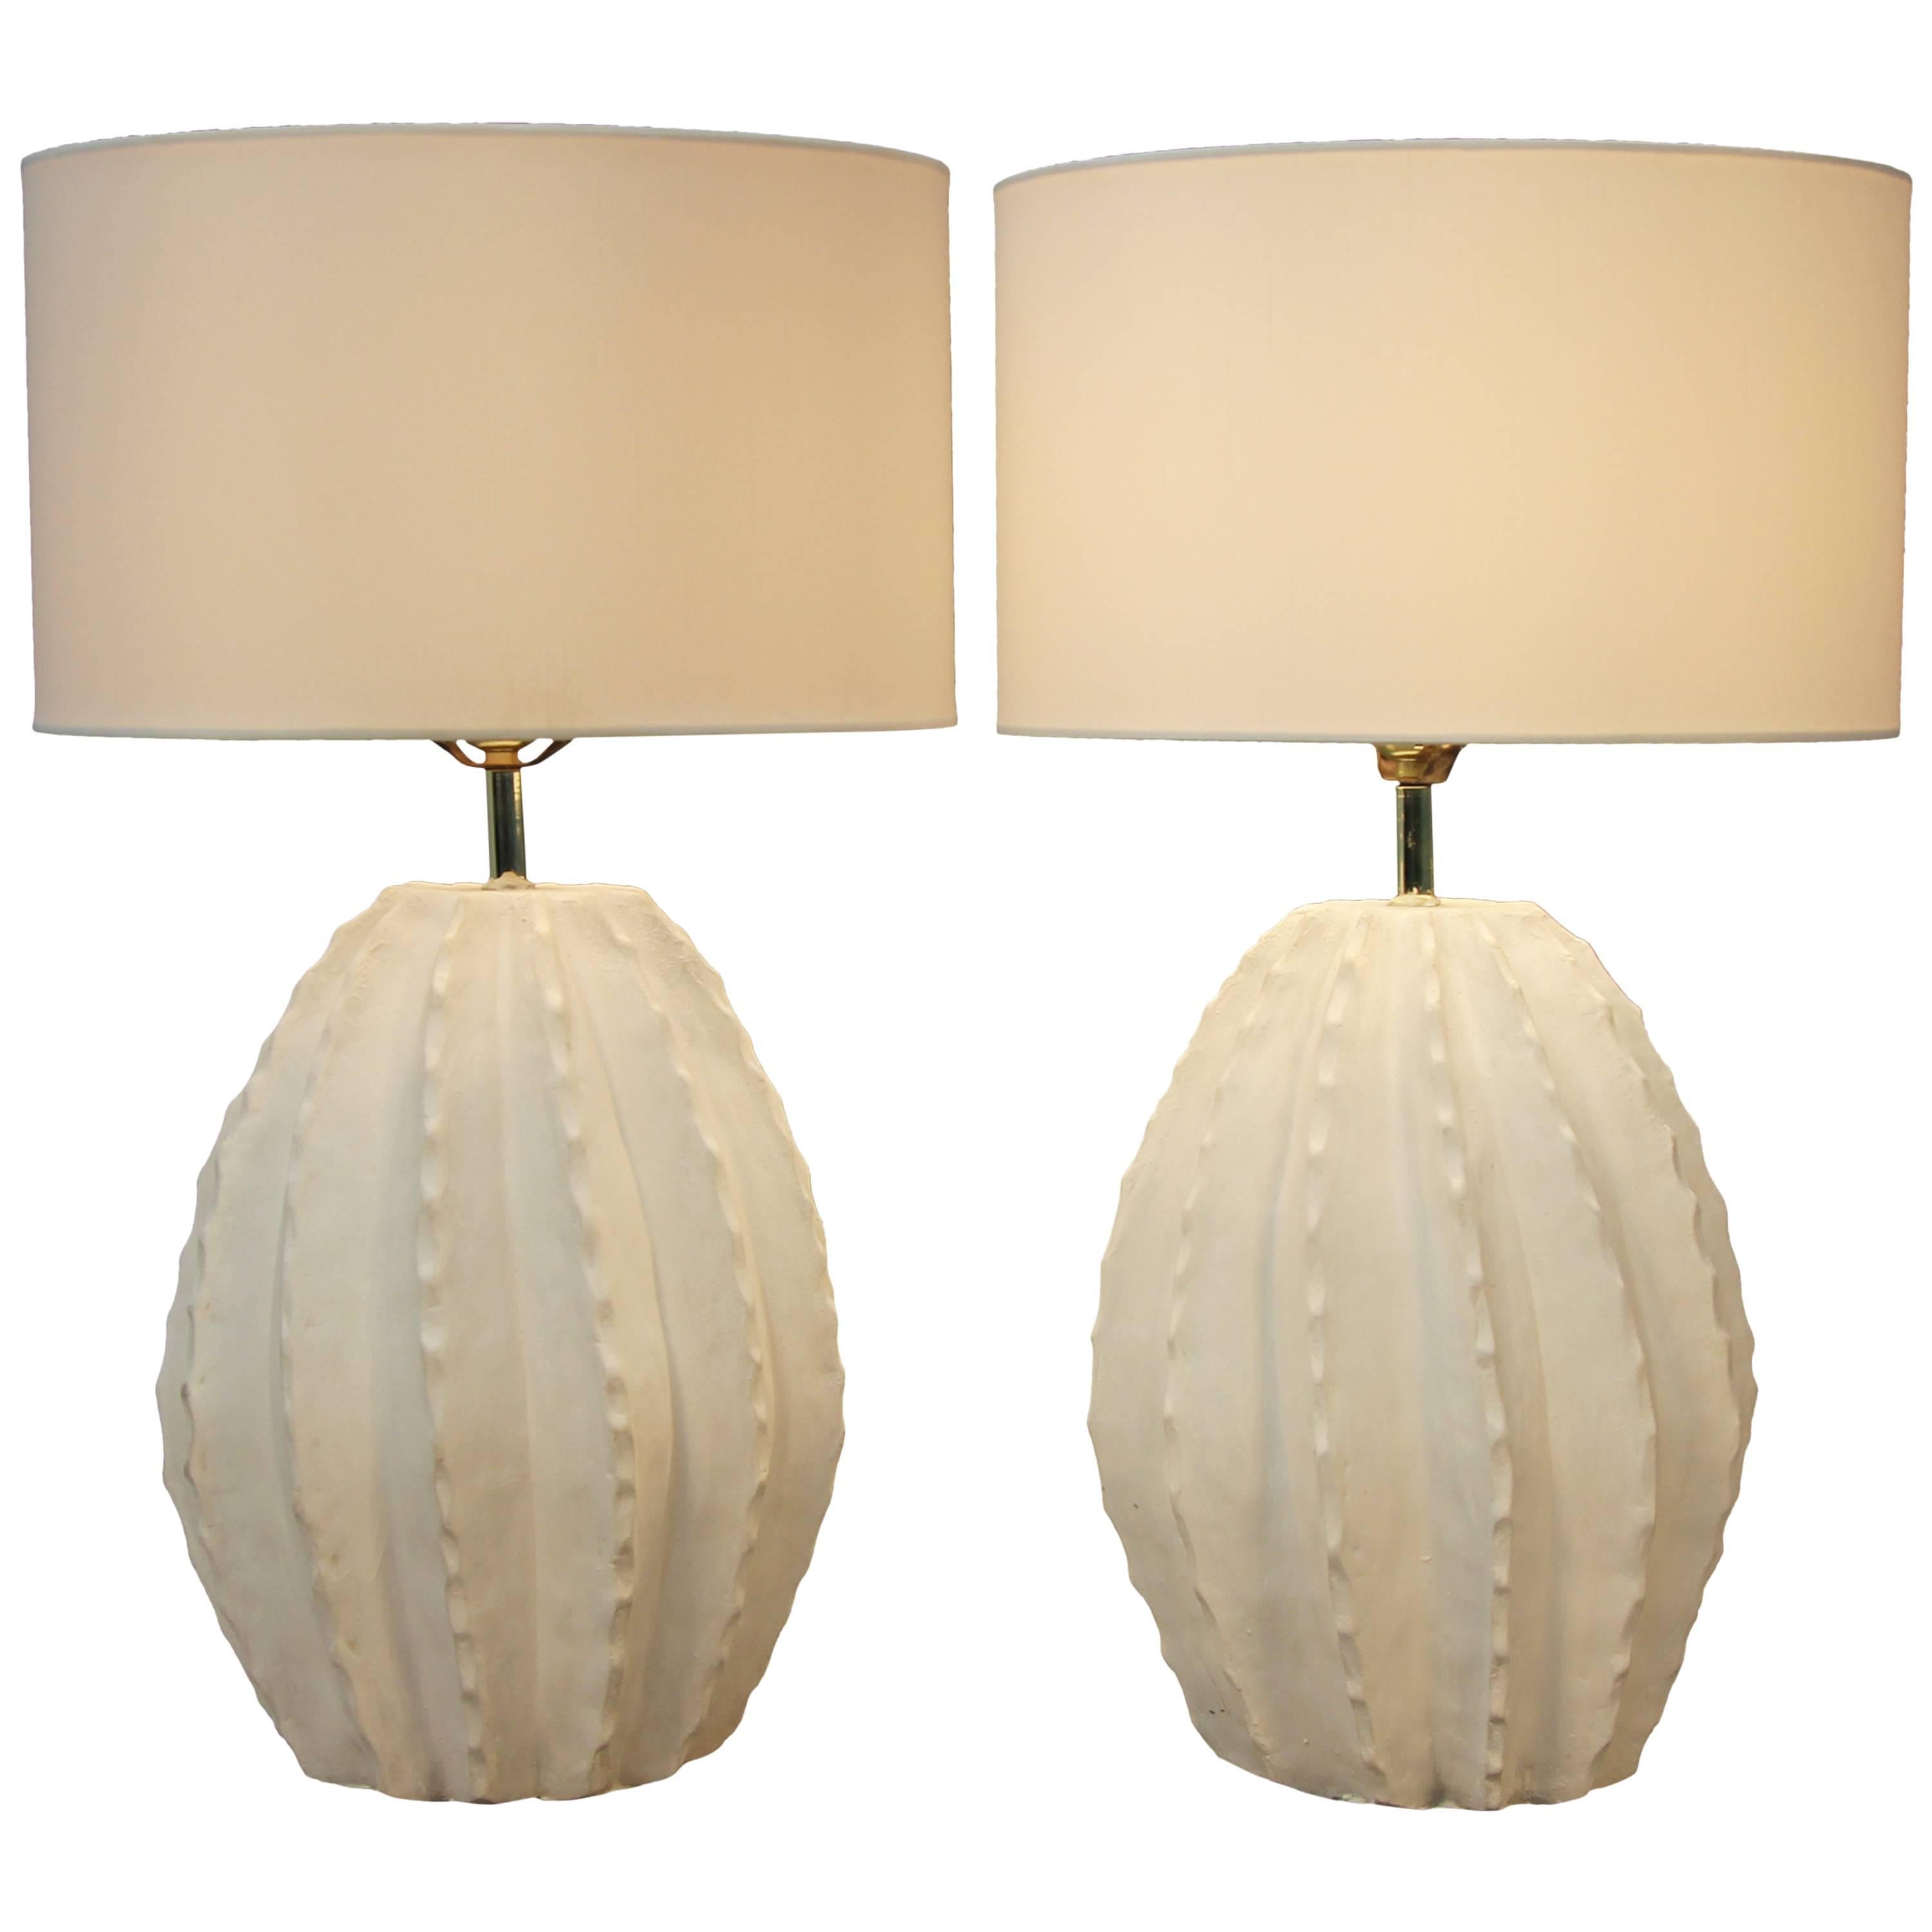 Pair of Vintage Cactus Ceramic Lamps